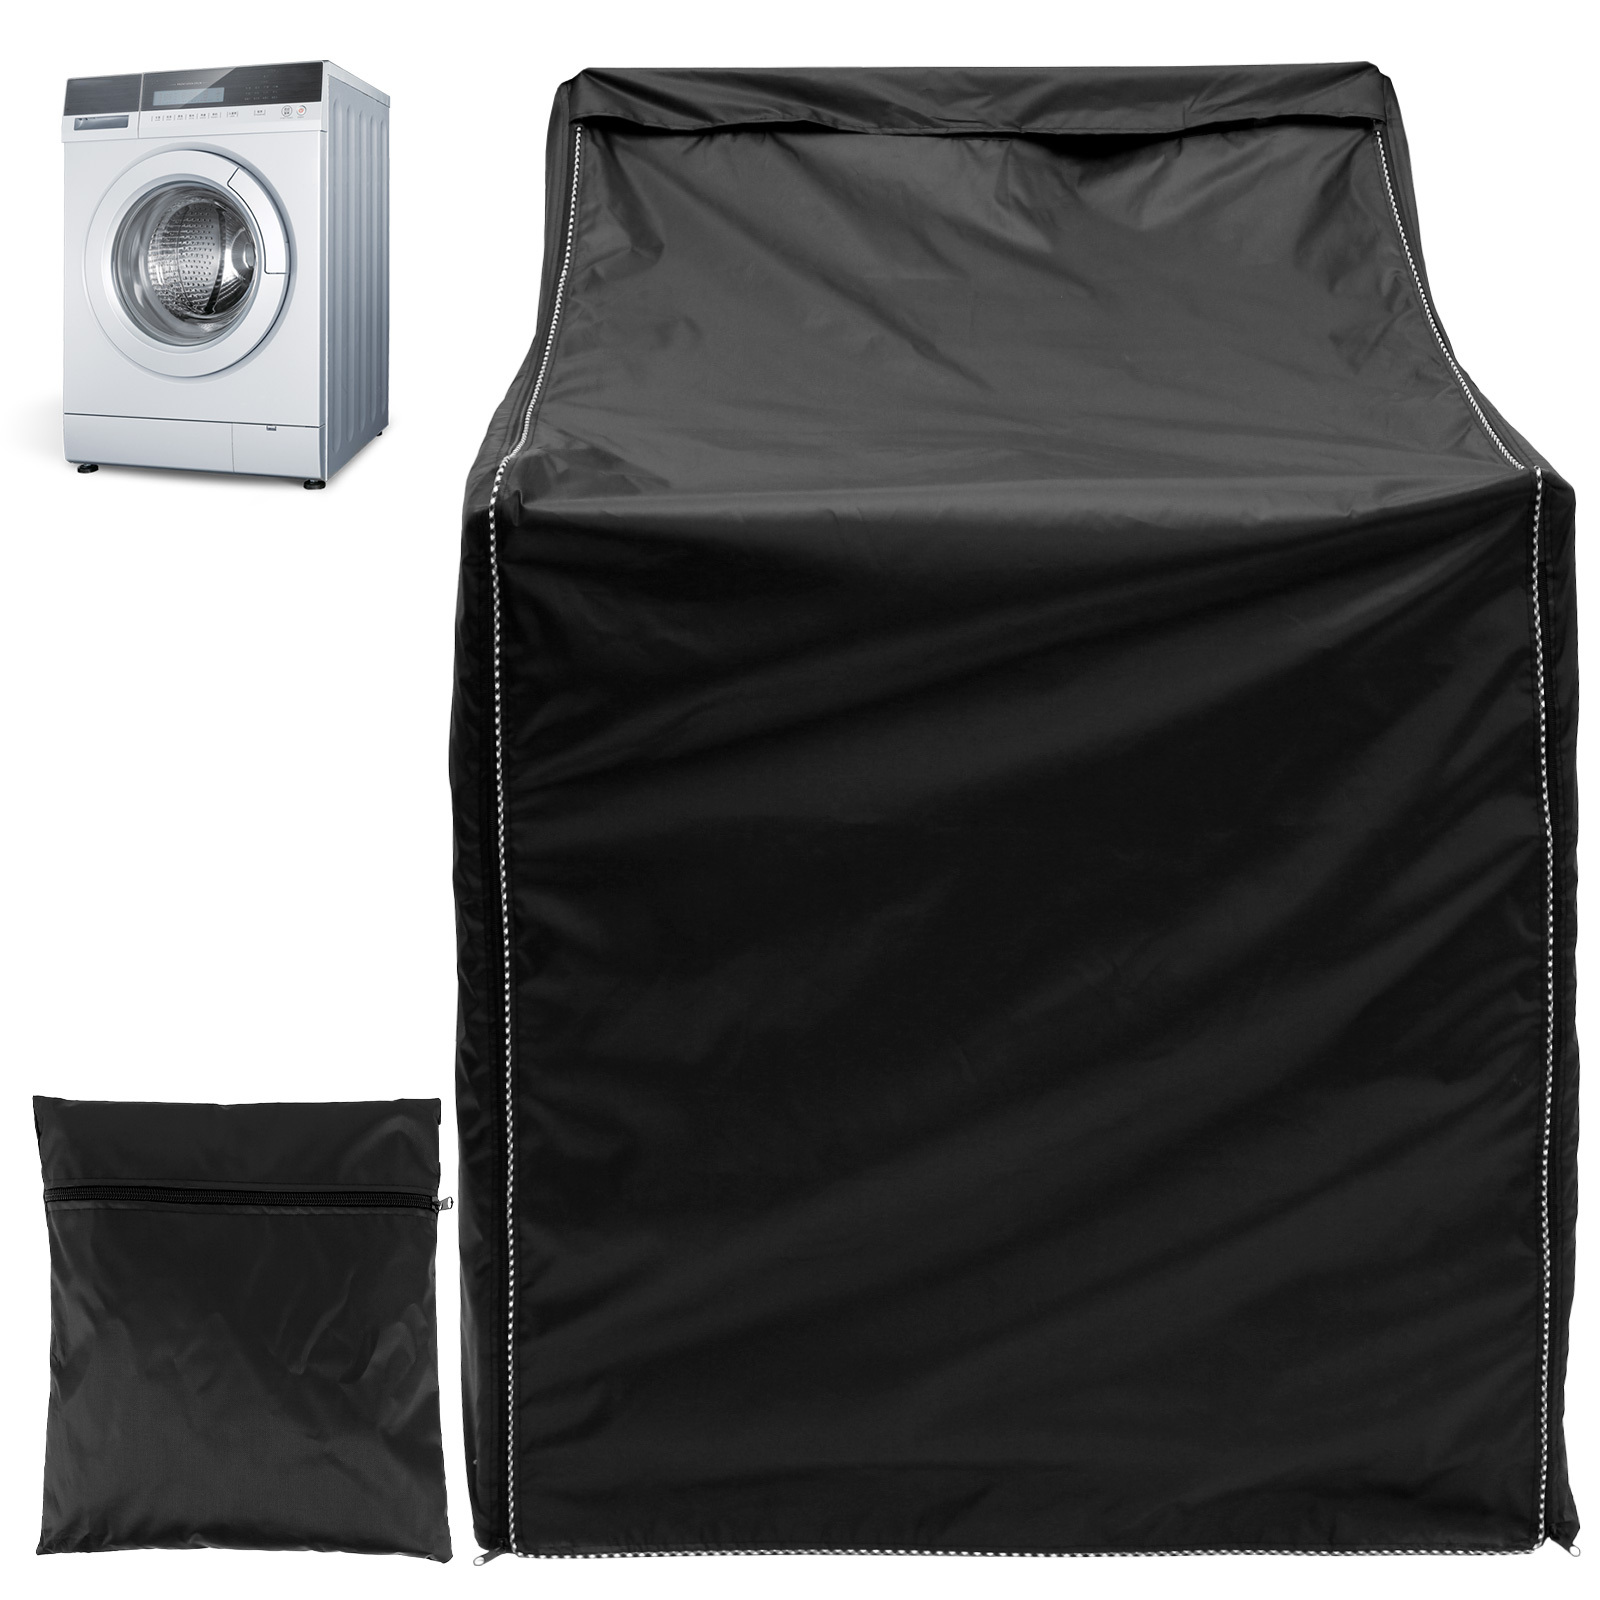  Covolo Fundas para lavadora que se adaptan a la mayoría de  lavadoras/secadoras de carga superior, impermeables, a prueba de polvo,  resistentes al sol (27 x 26 x 43 pulgadas, negro) : Electrodomésticos